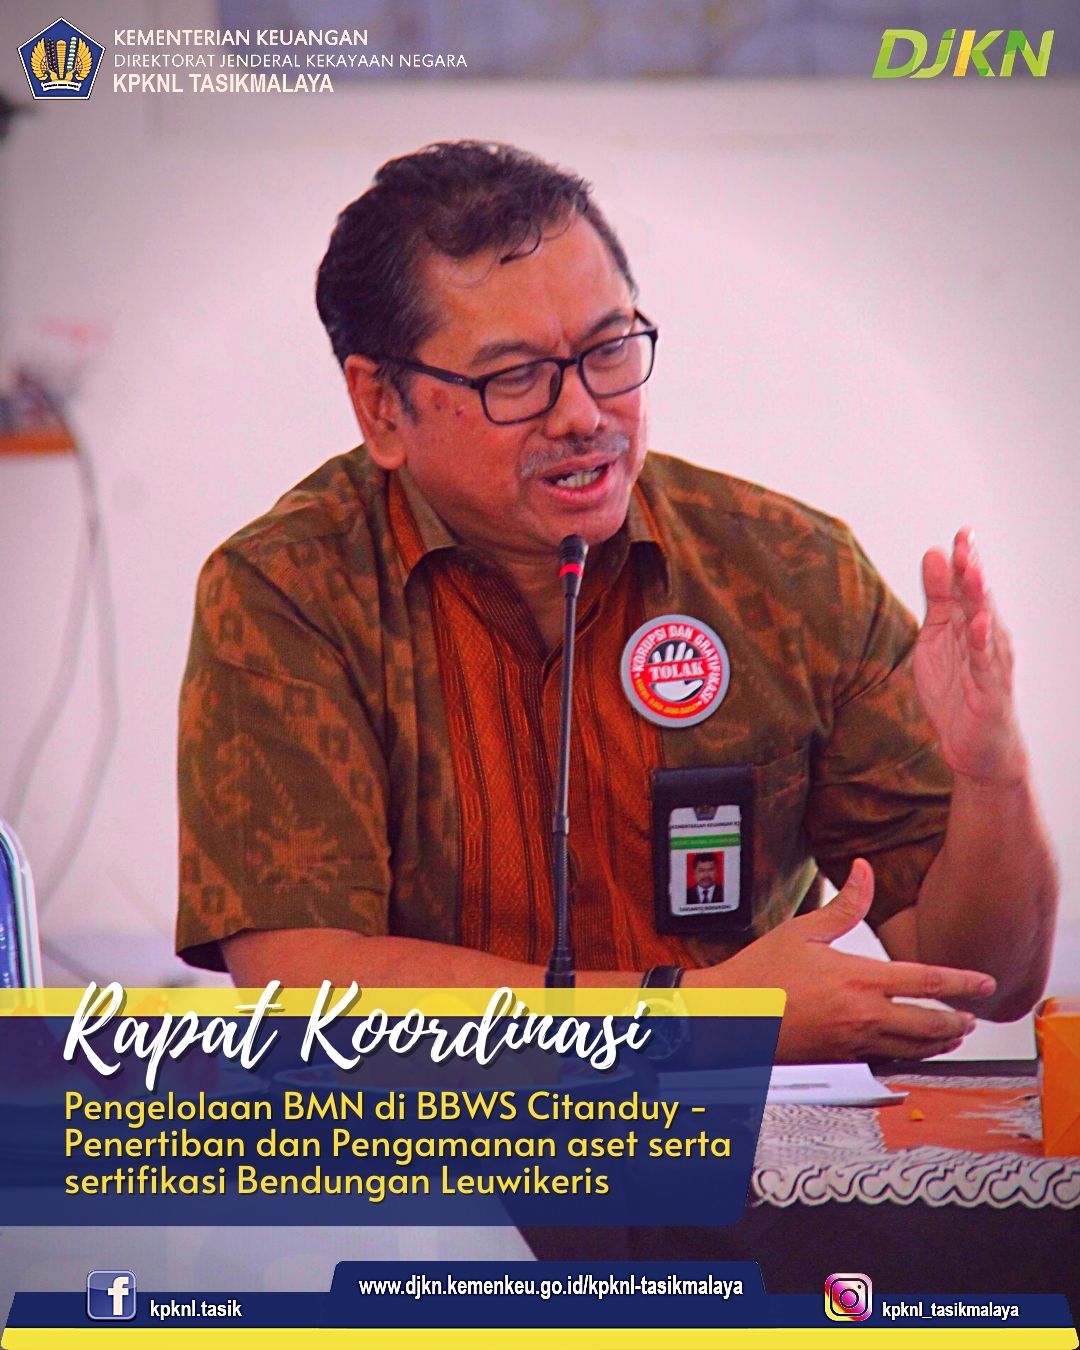 Rapat Koordinasi Pengelolaan BMN di BBWS Citanduy: Penertiban dan Pengamanan aset serta sertifikasi Bendungan Leuwikeris